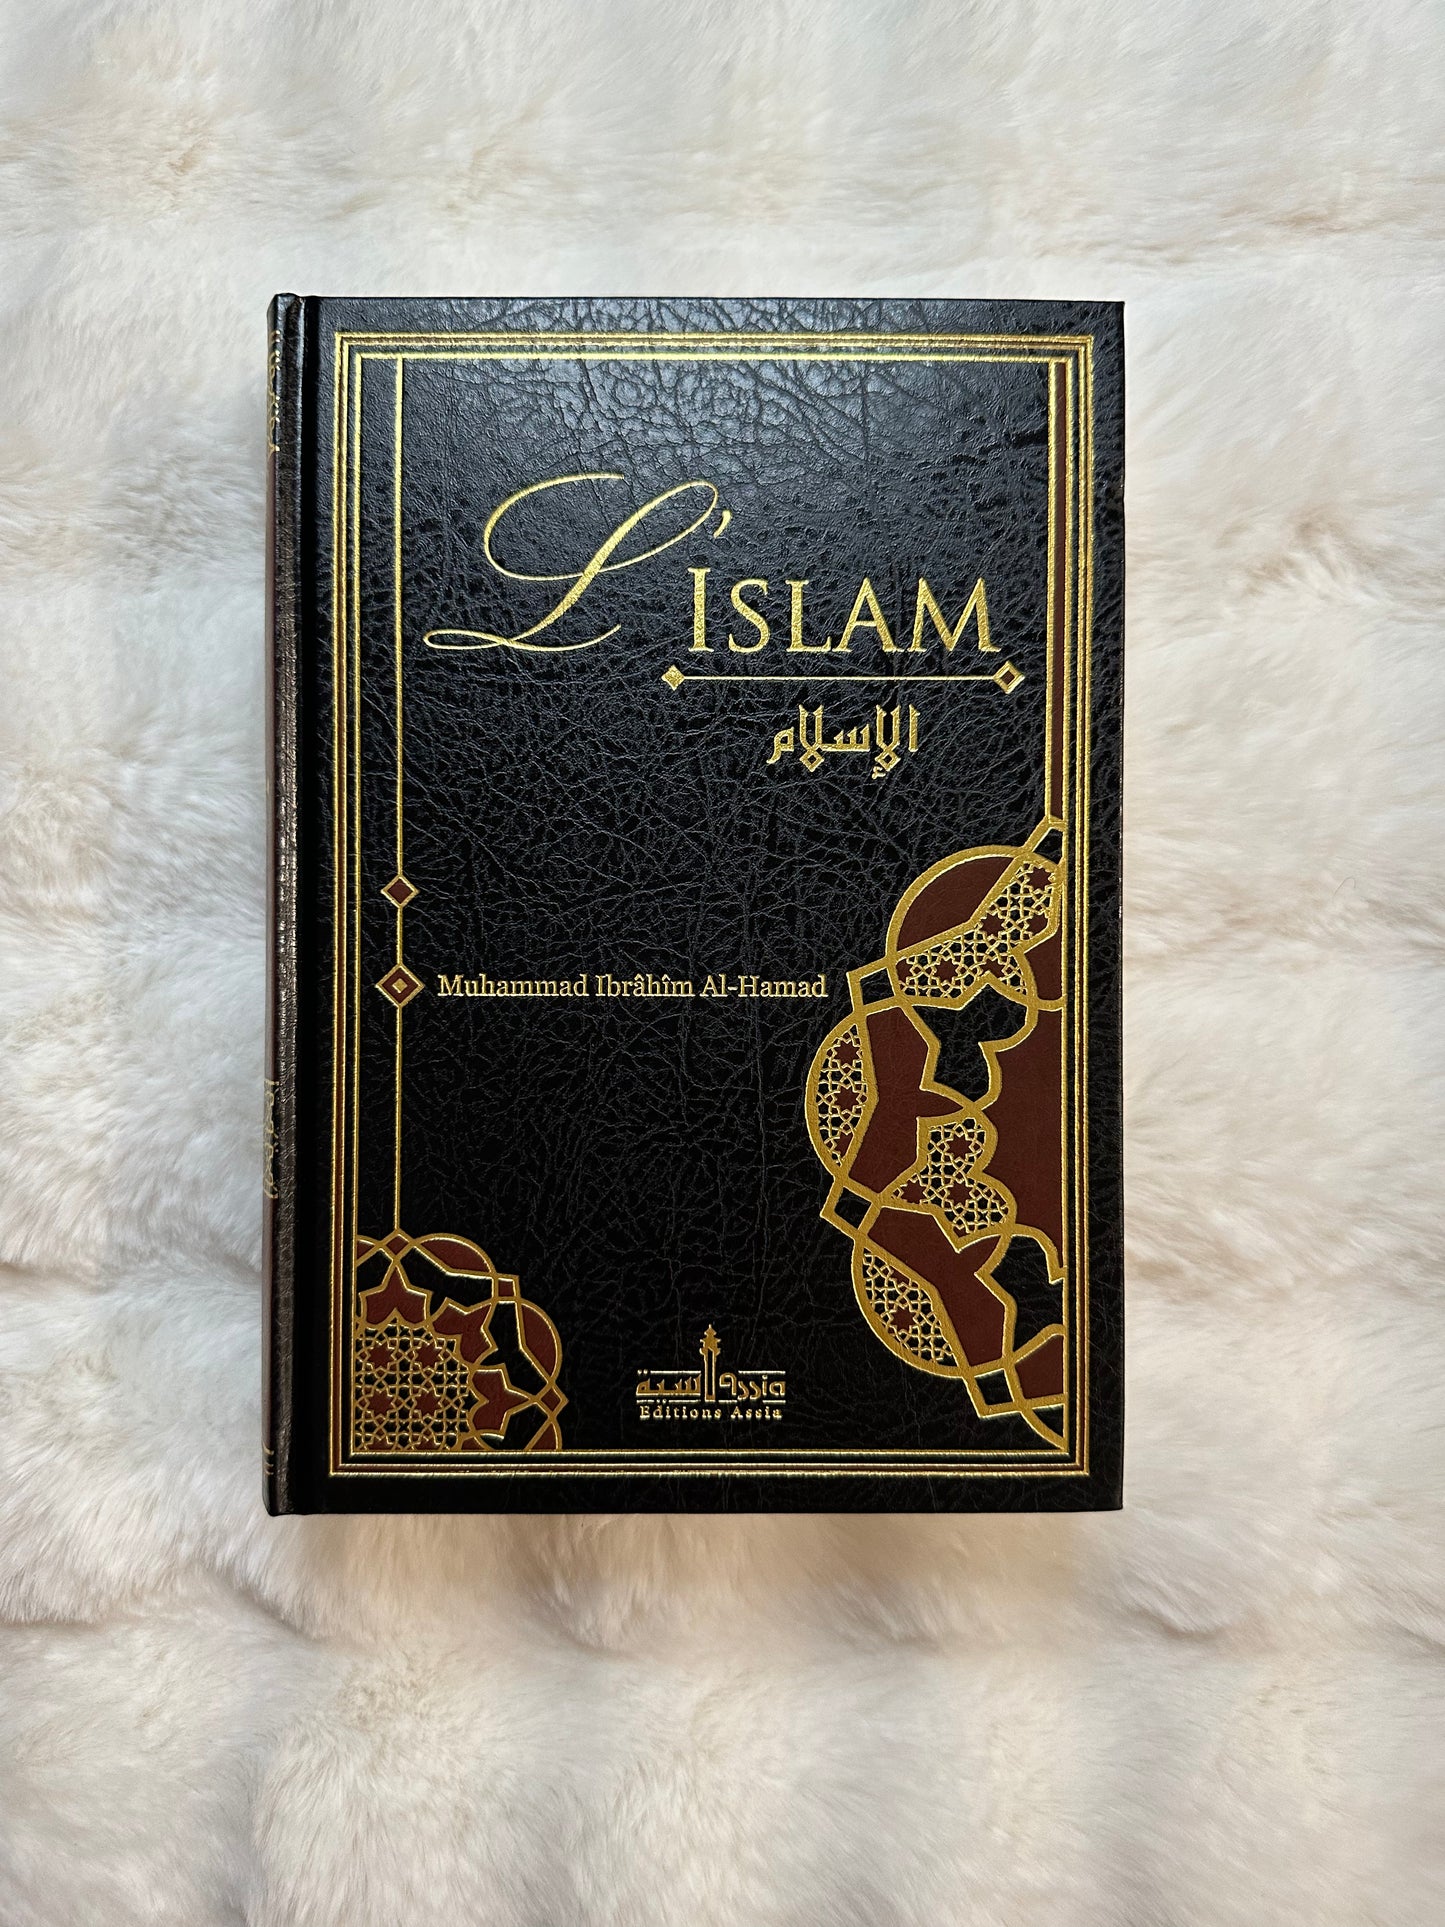 L'Islam, De Muhammad Ibrâhîm Al-Hamad, Édition Revue Et Corrigée 2015